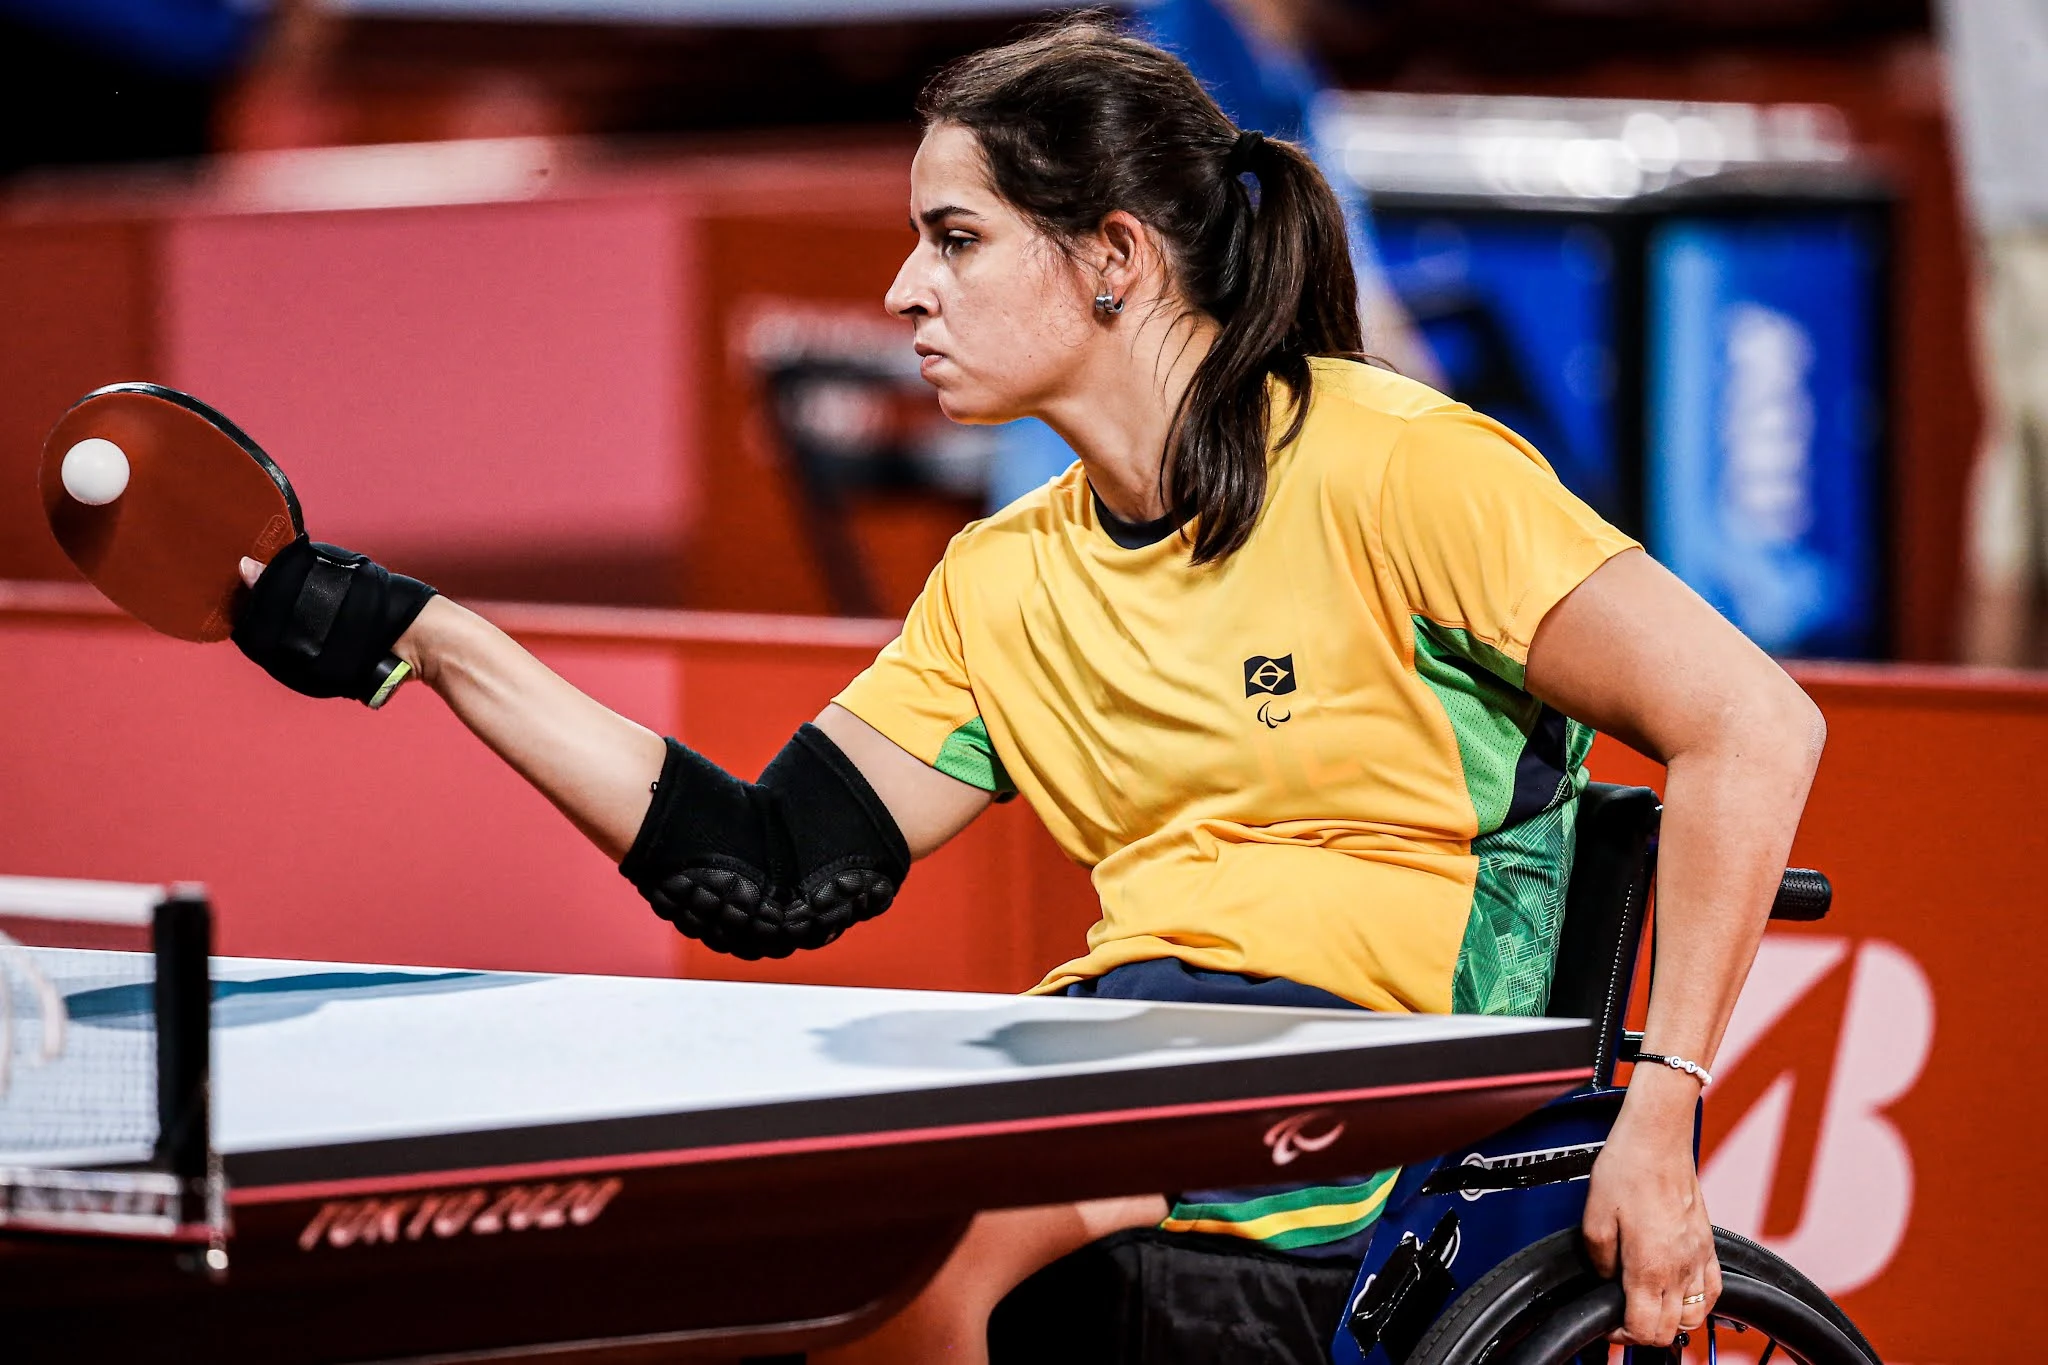 A mesa tenista Cátia Oliveira, de amarelo, rebate a bola branca com a raquete vermelha na mão direita, enquanto a outra mão está segurando a roda da cadeira de rodas, na qual a atleta está sentada